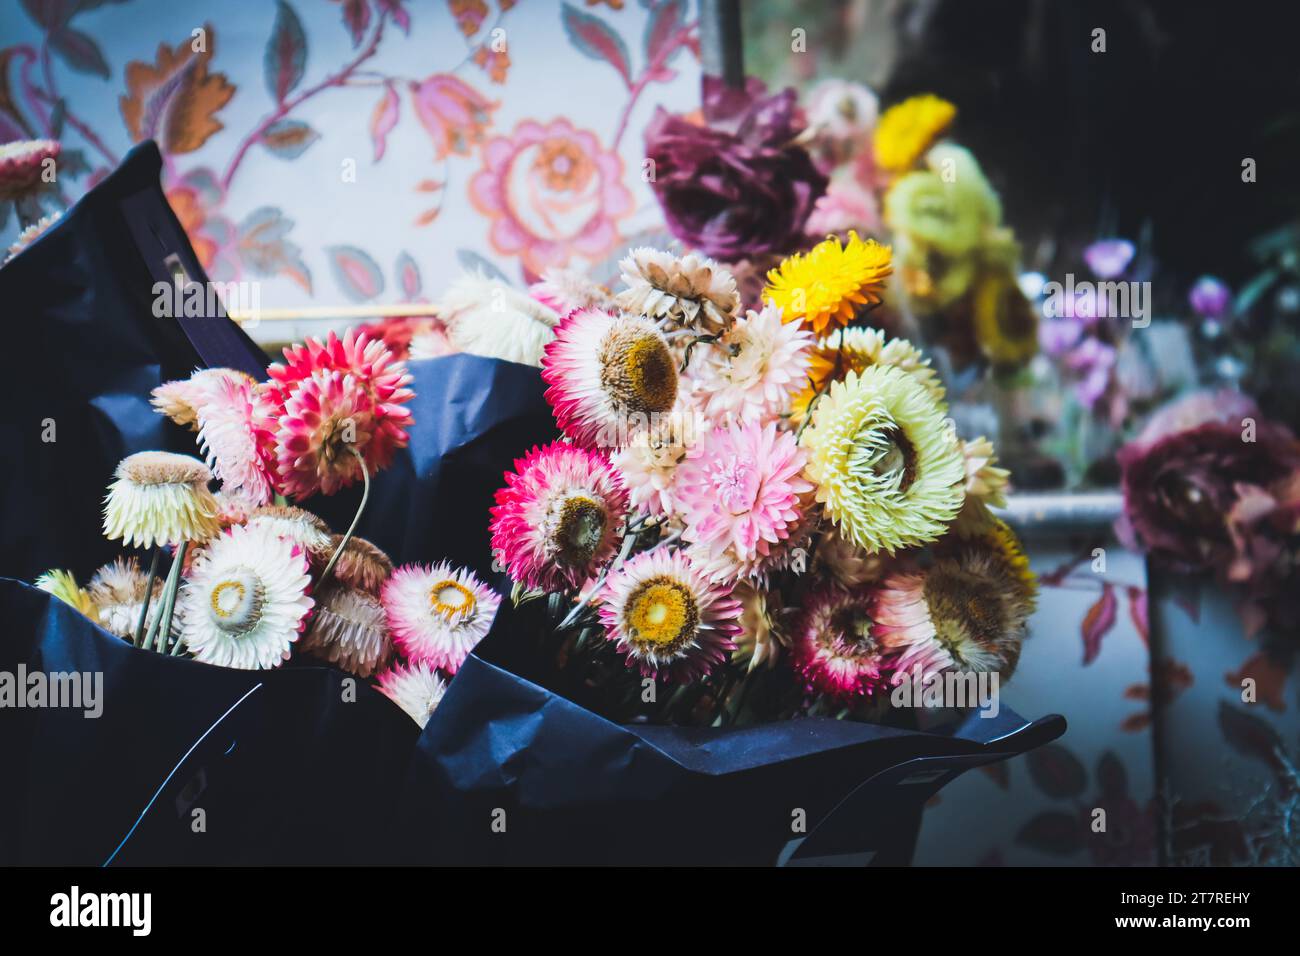 Graziosa mostra di fiori presso il negozio nel centro storico di Berna, Svizzera. Fiori appassiti. Sfocata. Foto Stock